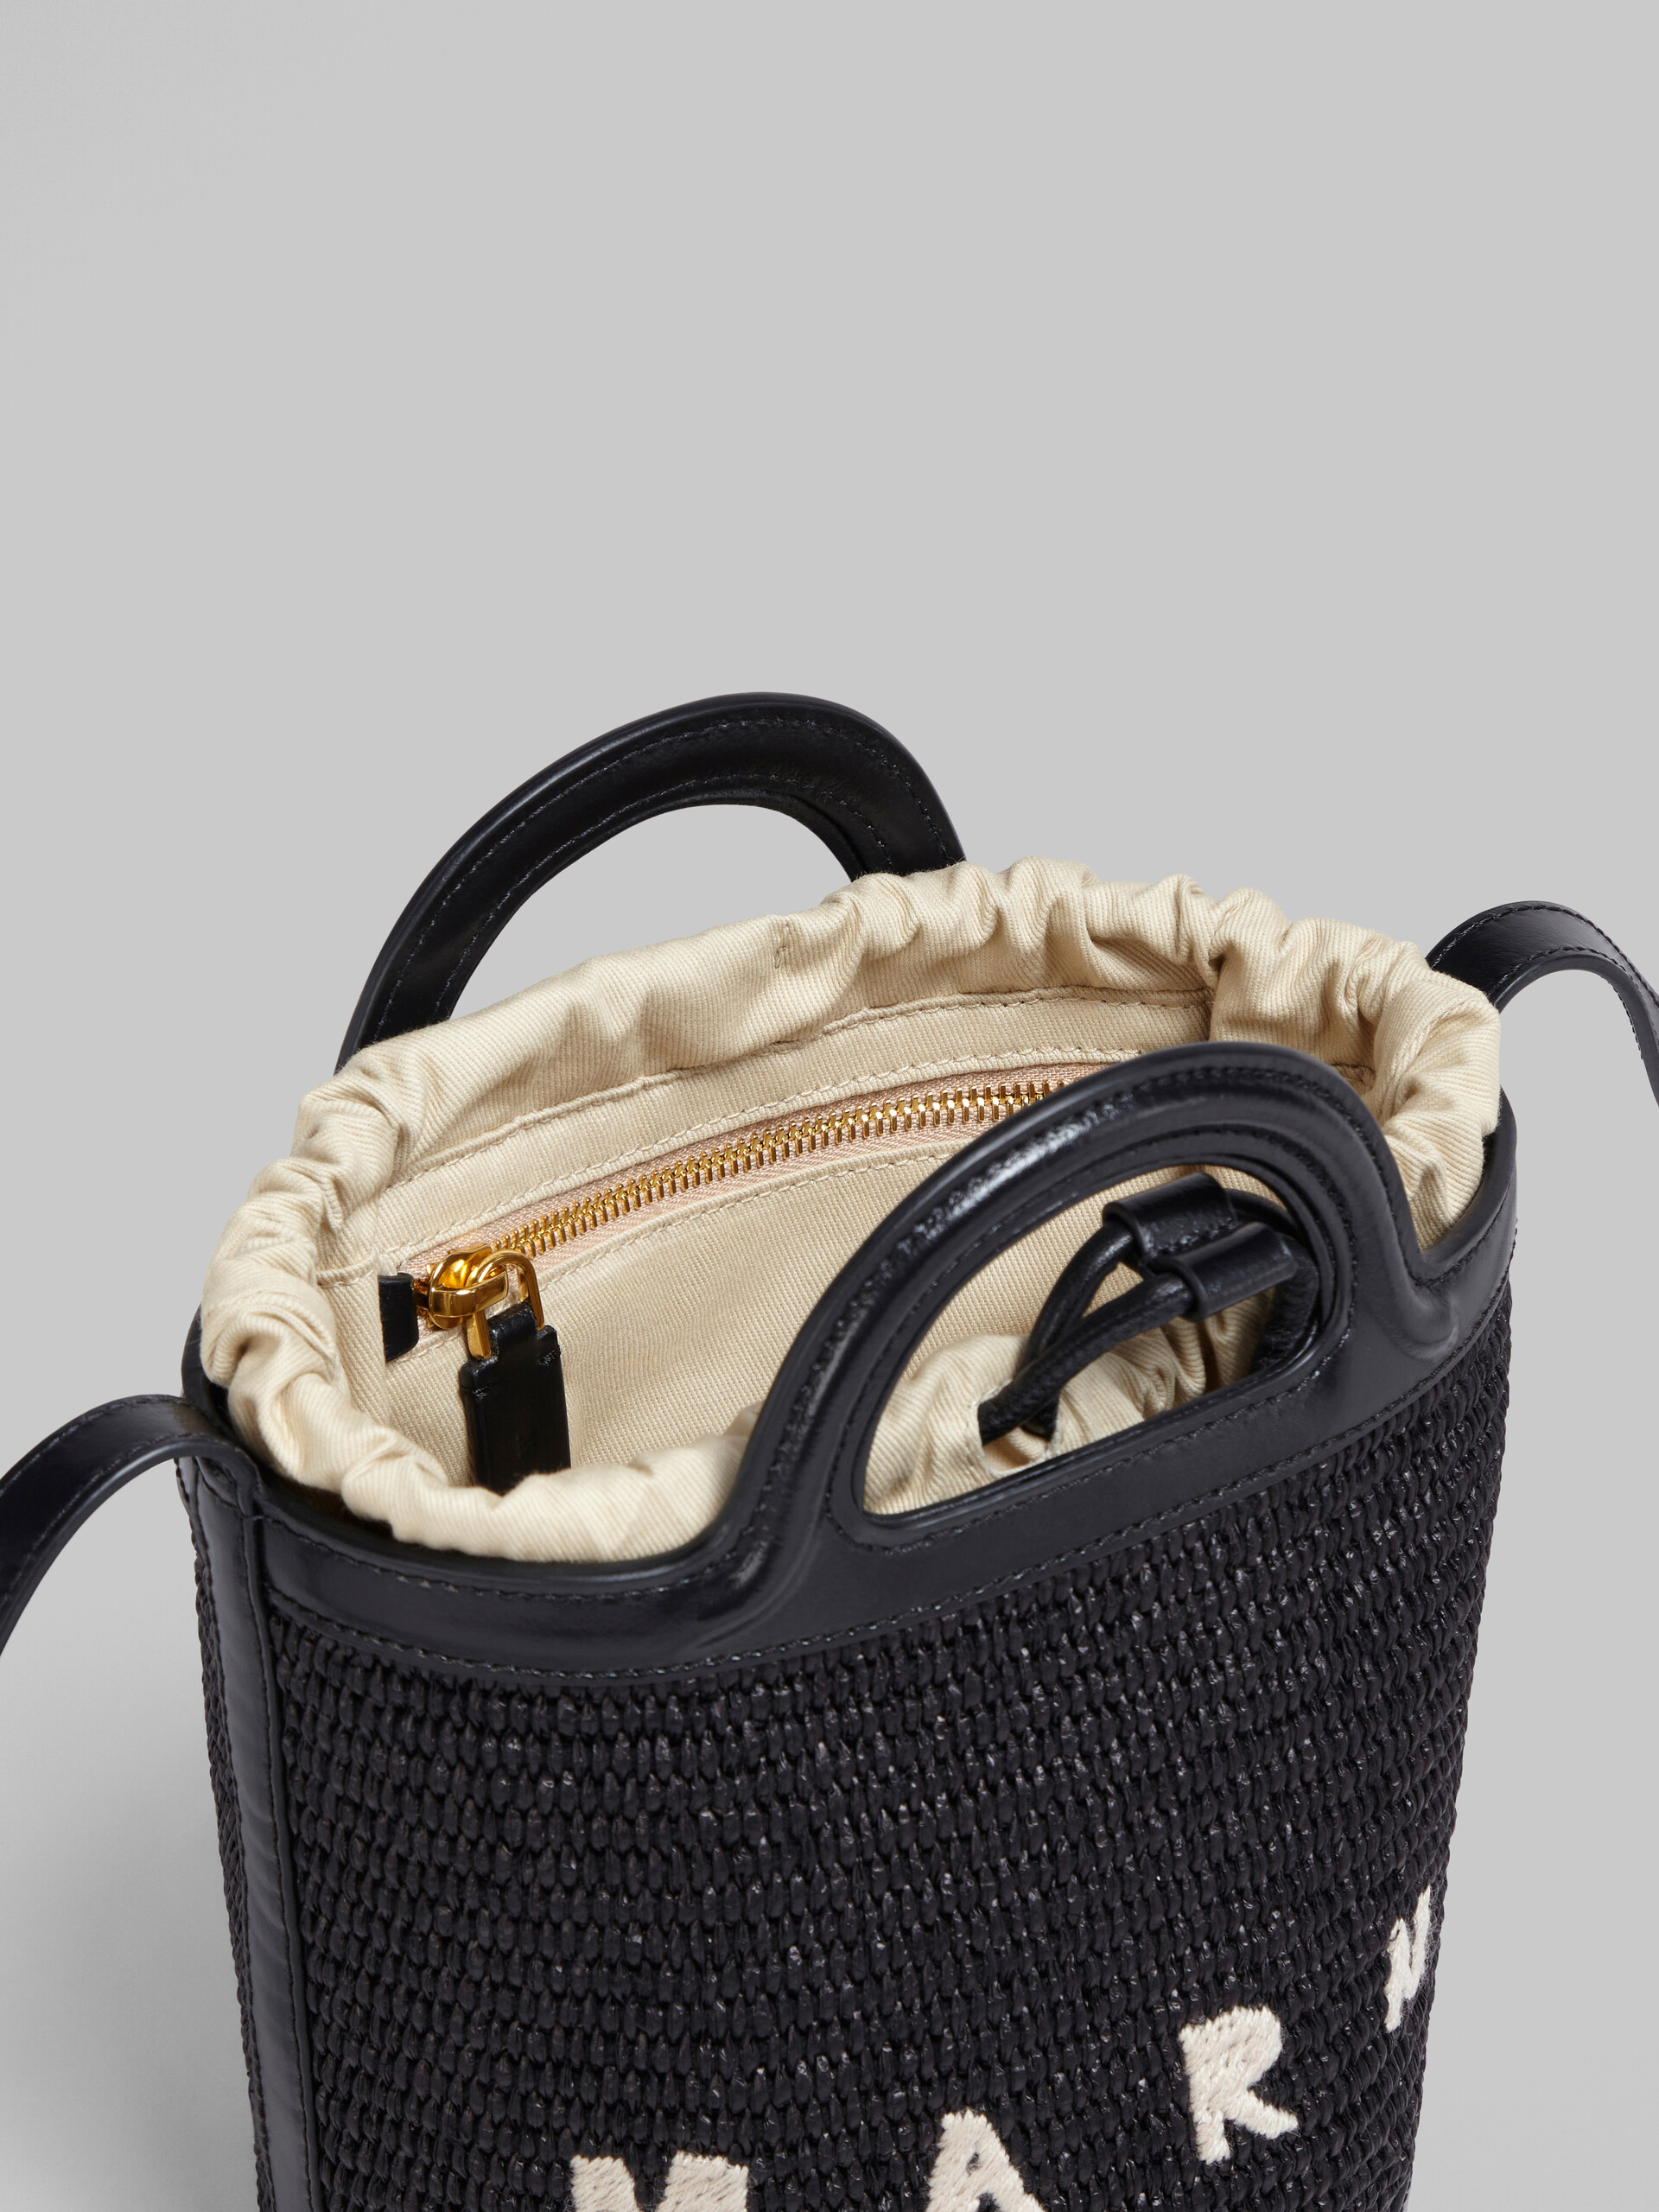 TROPICALIA bag a secchiello mini in pelle e rafia nera - Borse a spalla - Image 4